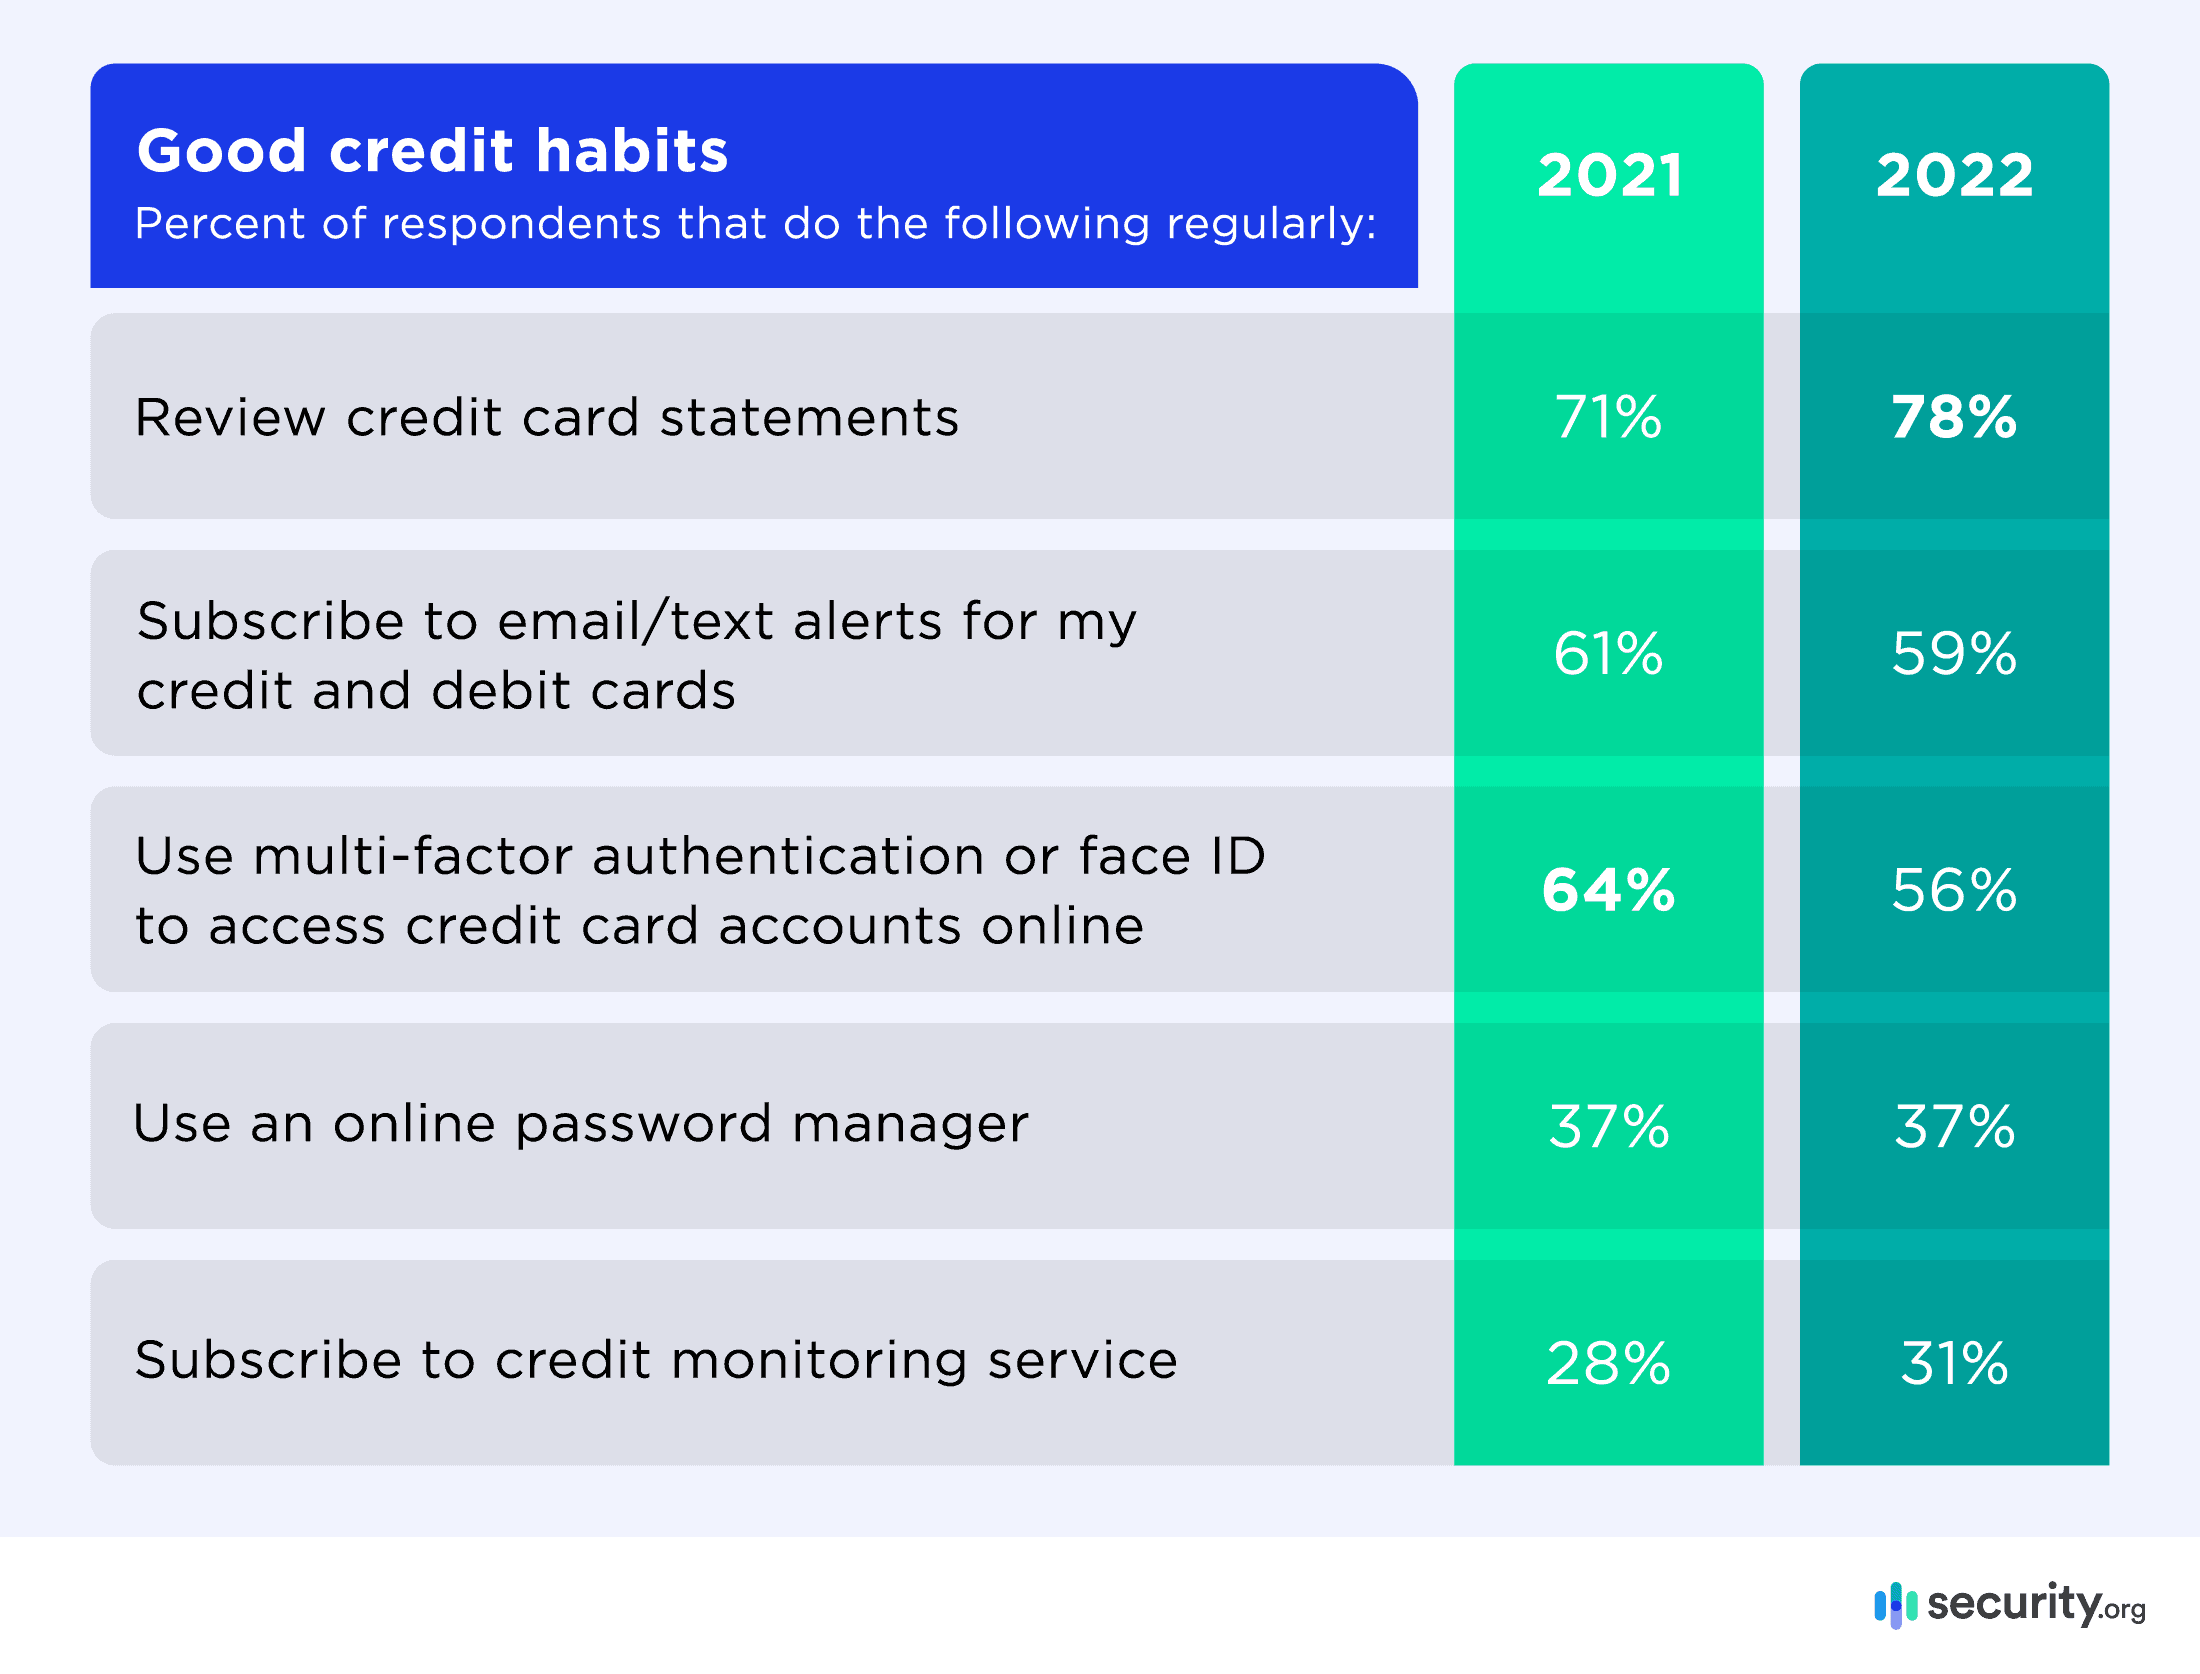 Good credit habits